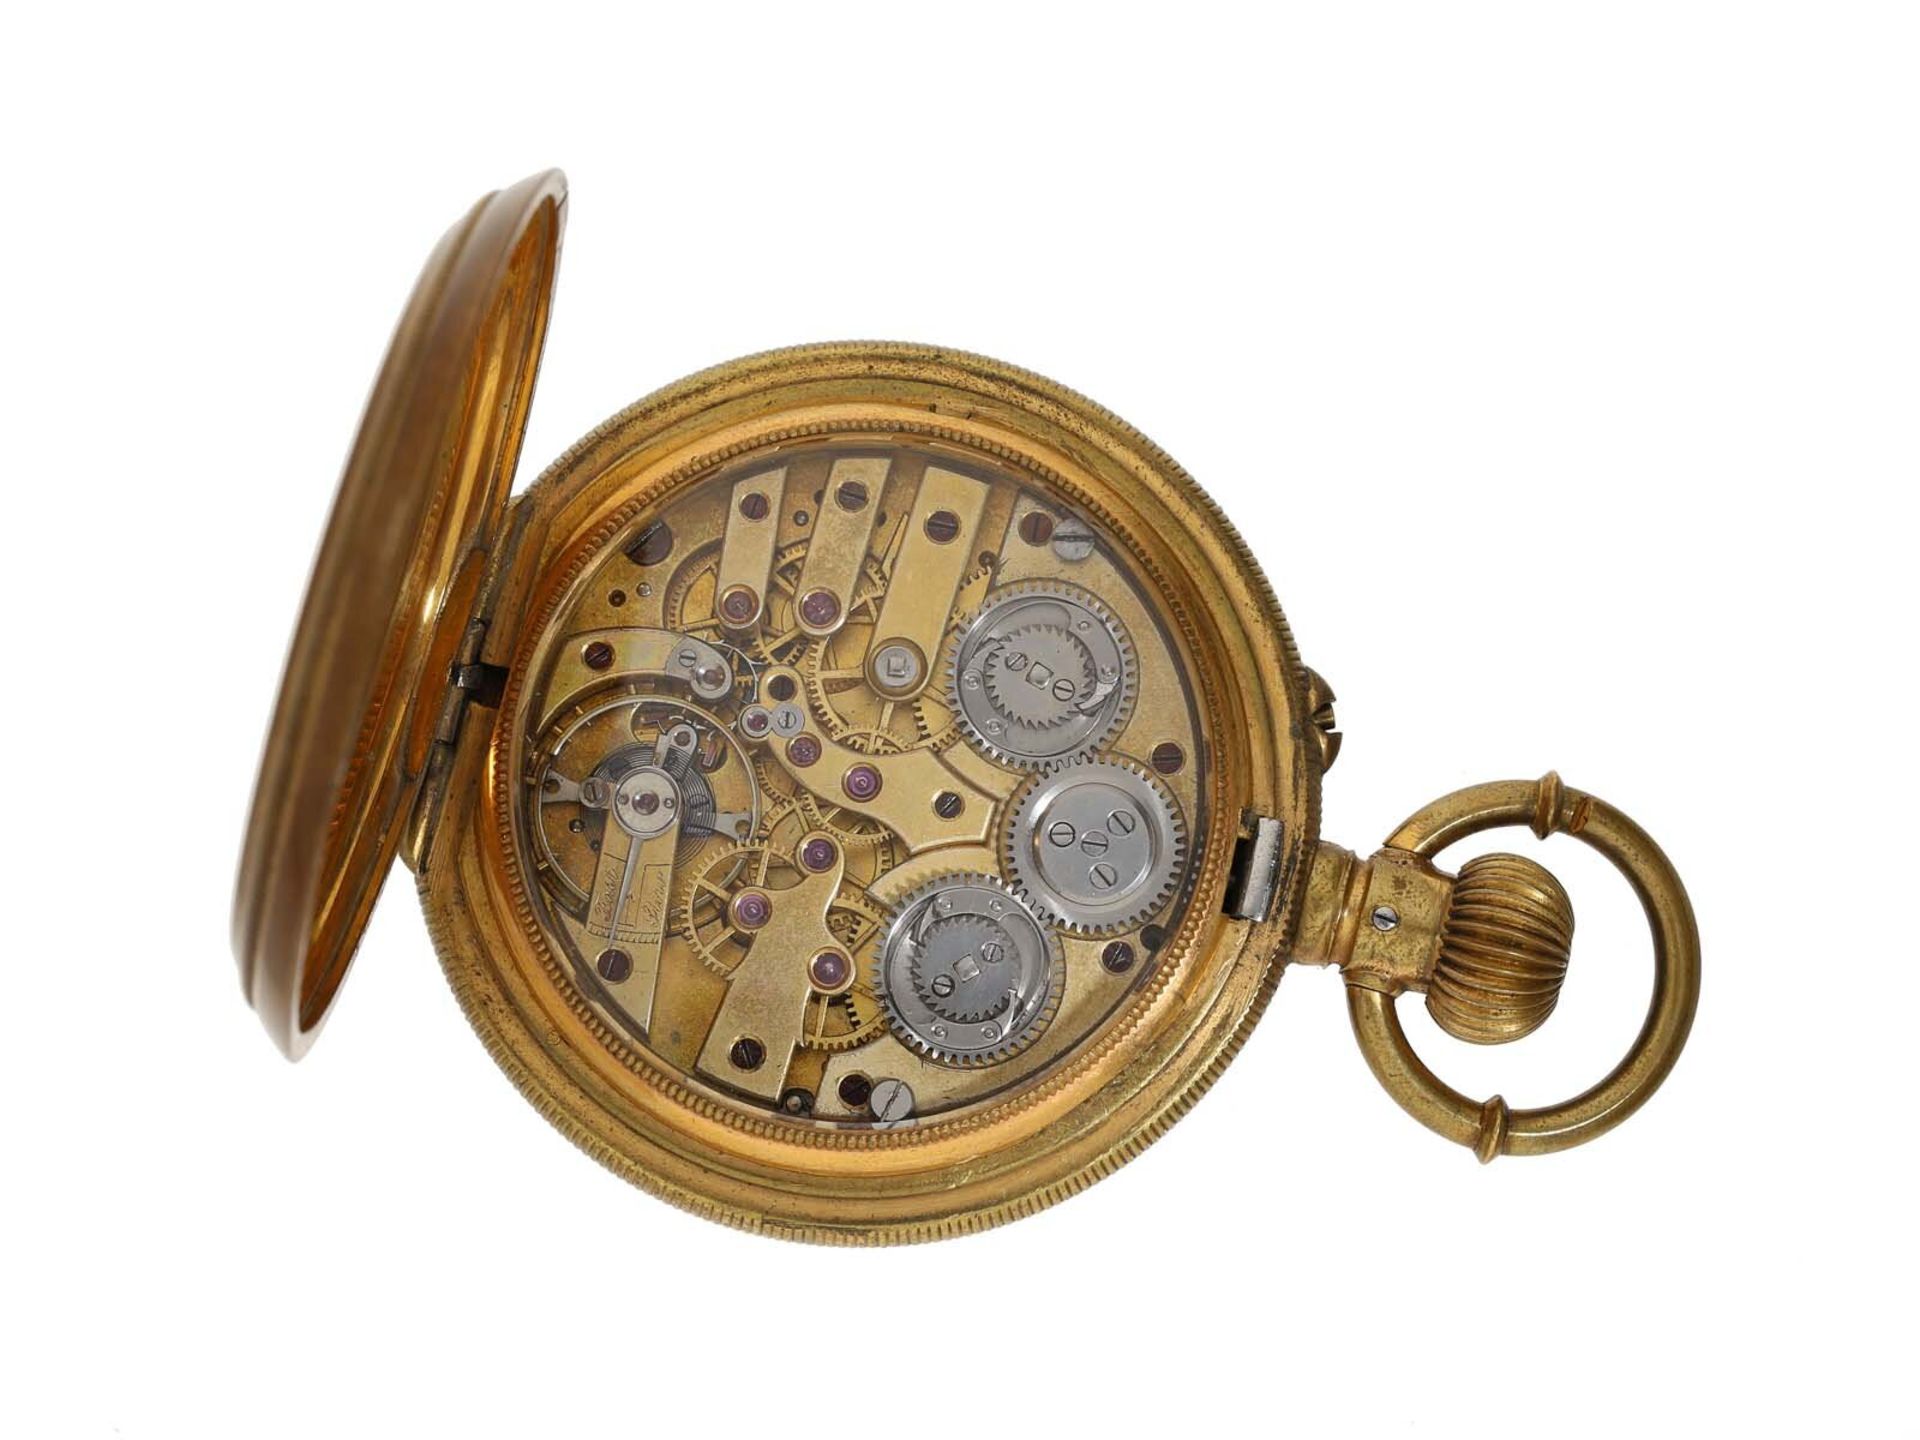 Taschenuhr: hochfeine Taschenuhr mit Seconde Morte und Tandem-Aufzug, ca. 1870 - Bild 3 aus 3